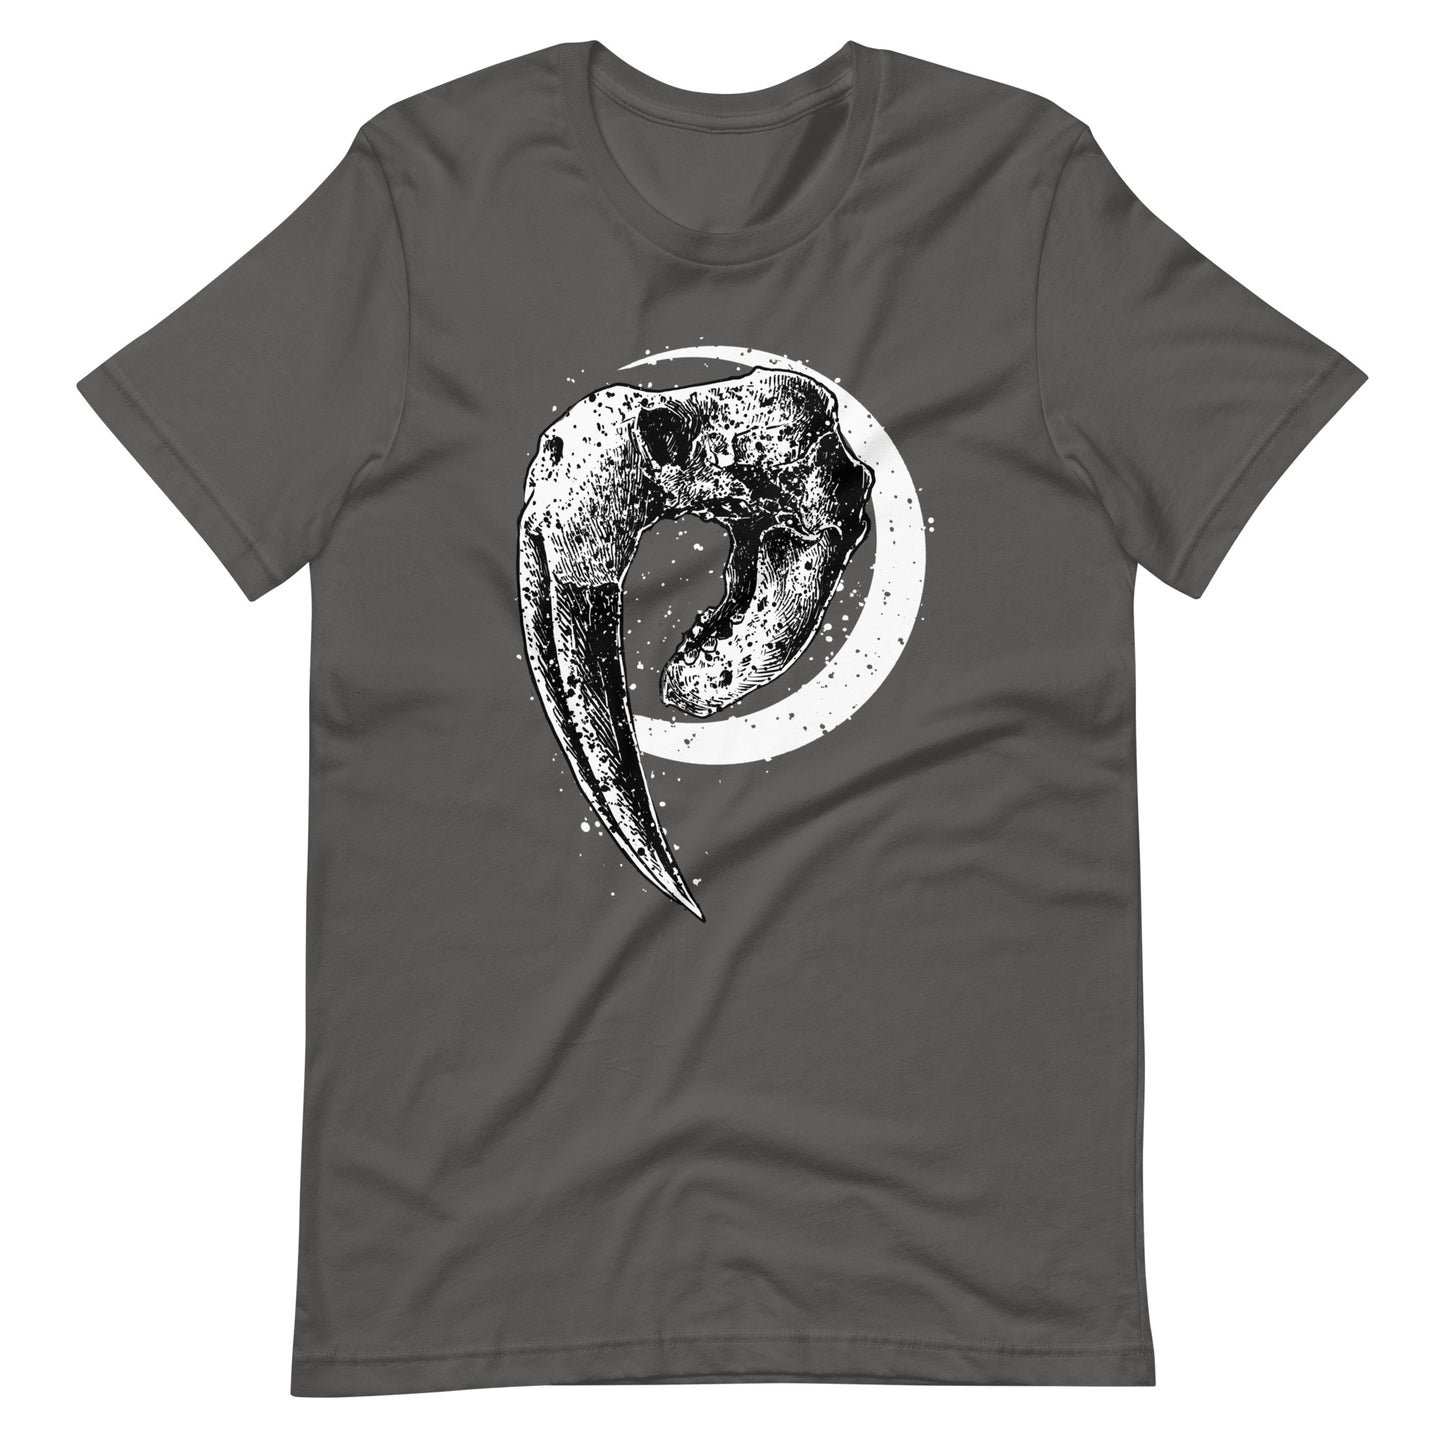 Walrus - Men's t-shirt - Asphalt Front